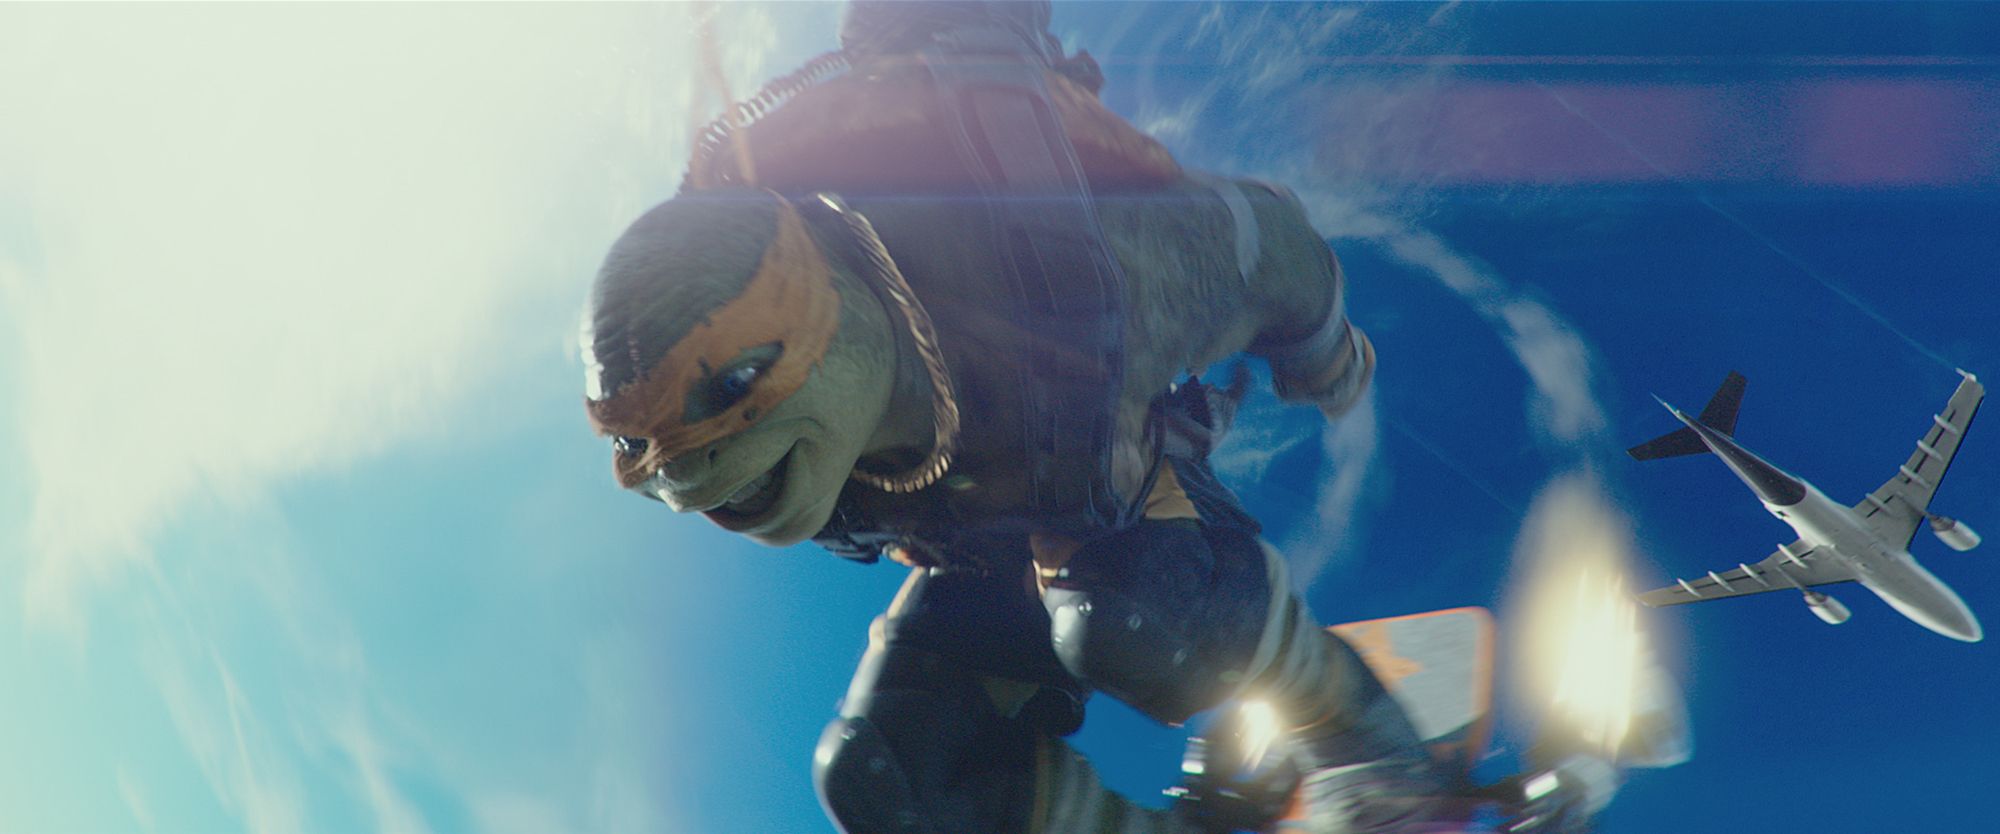 tmnt2036 Teenage Mutant Ninja Turtles 2 Trailer Screenshots